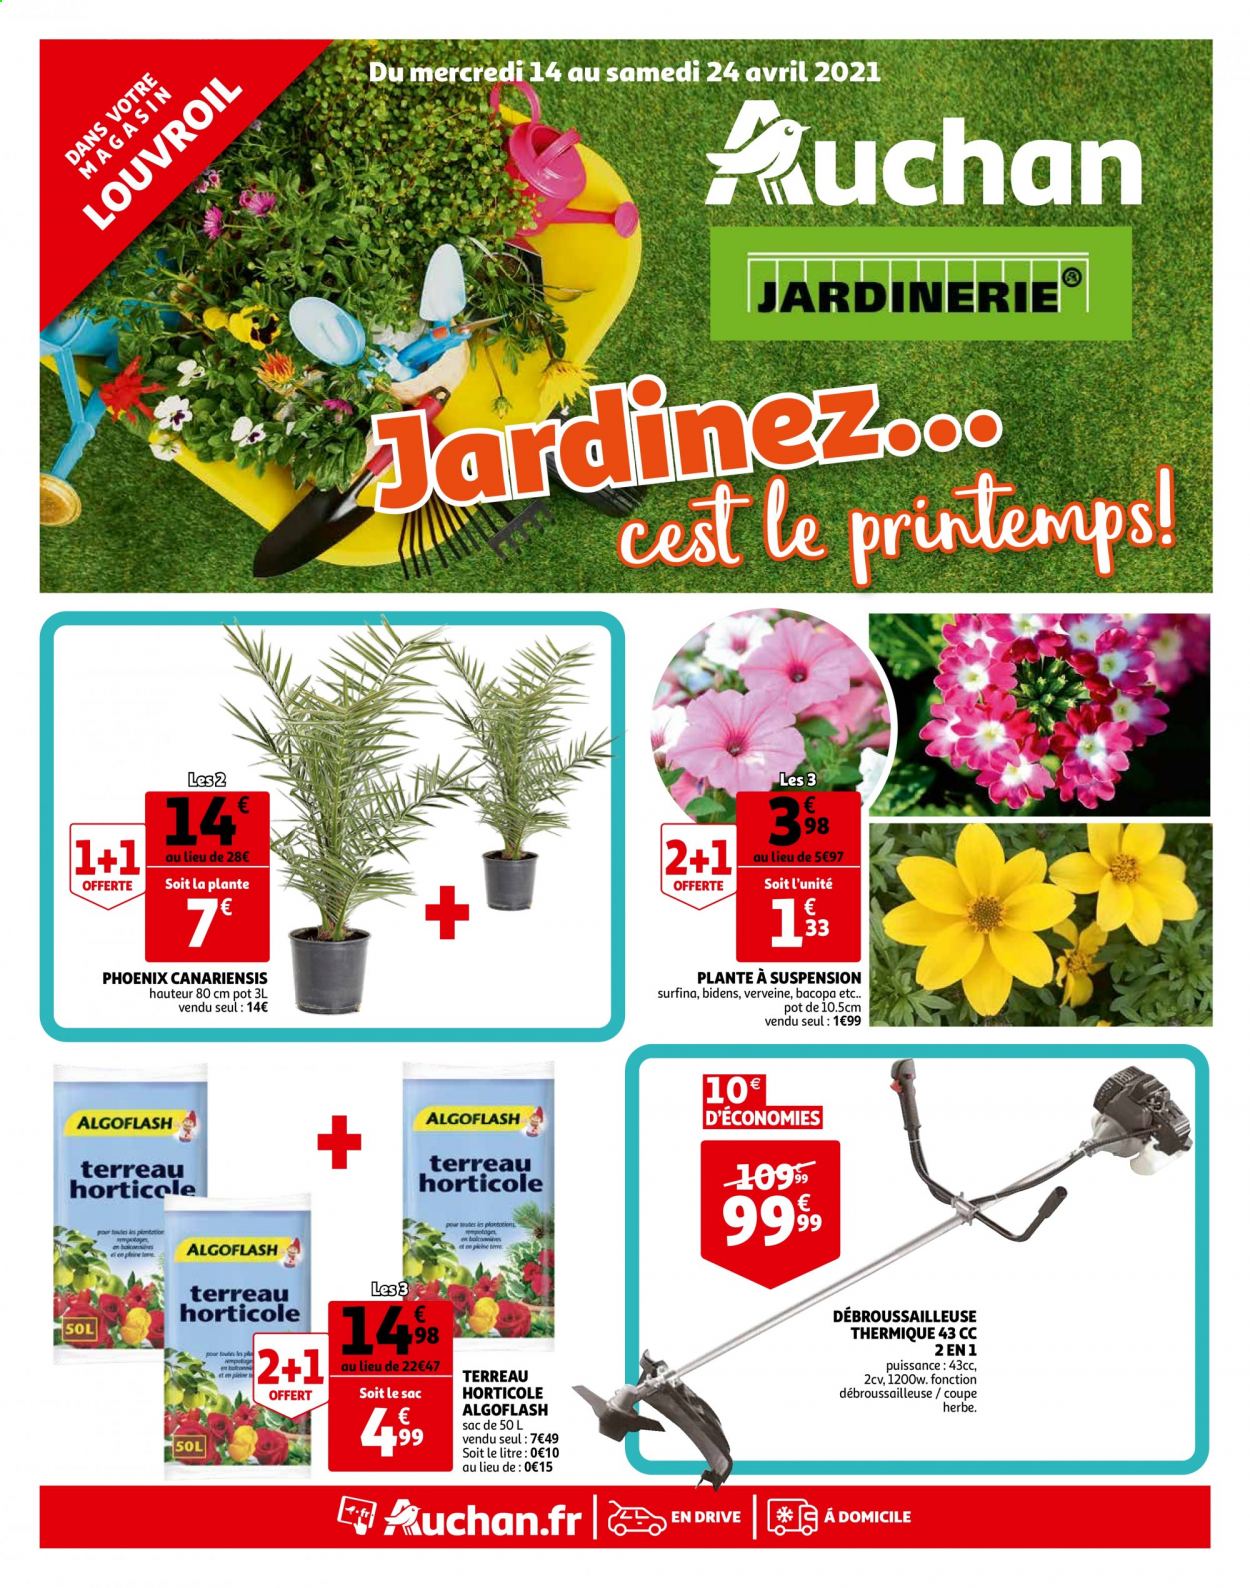 thumbnail - Catalogue Auchan - 14/04/2021 - 24/04/2021 - Produits soldés - sac à main, coupe herbe, débroussailleuse, terreau, Algoflash, phoenix canariensis. Page 1.